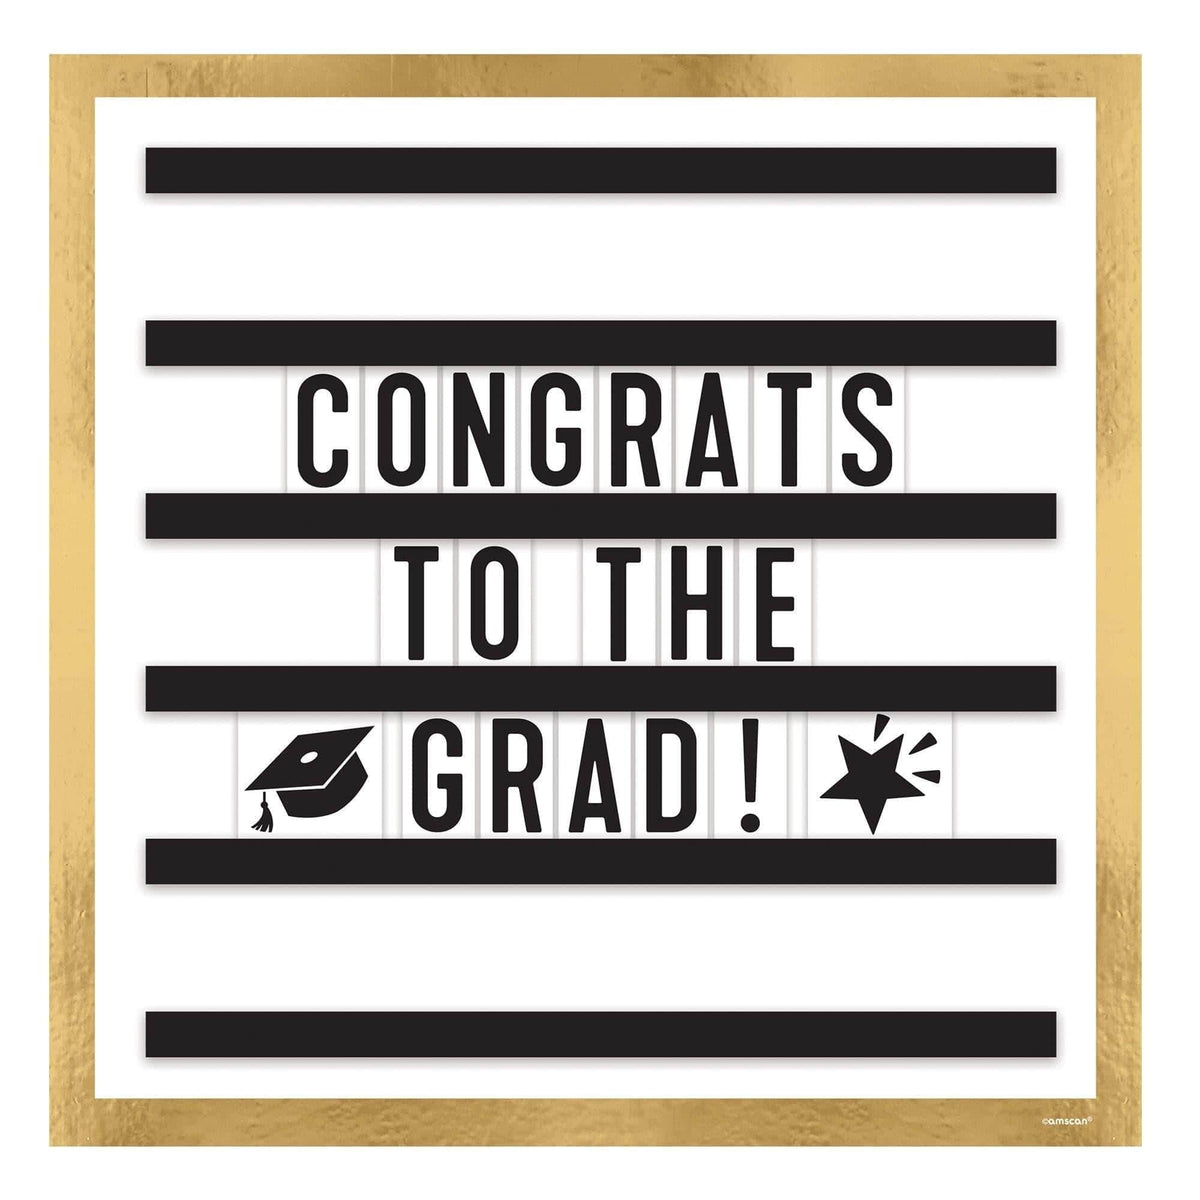 AMSCAN CA Graduation Graduation Letter Board "Congrats to the Grad!", 12" x 12"